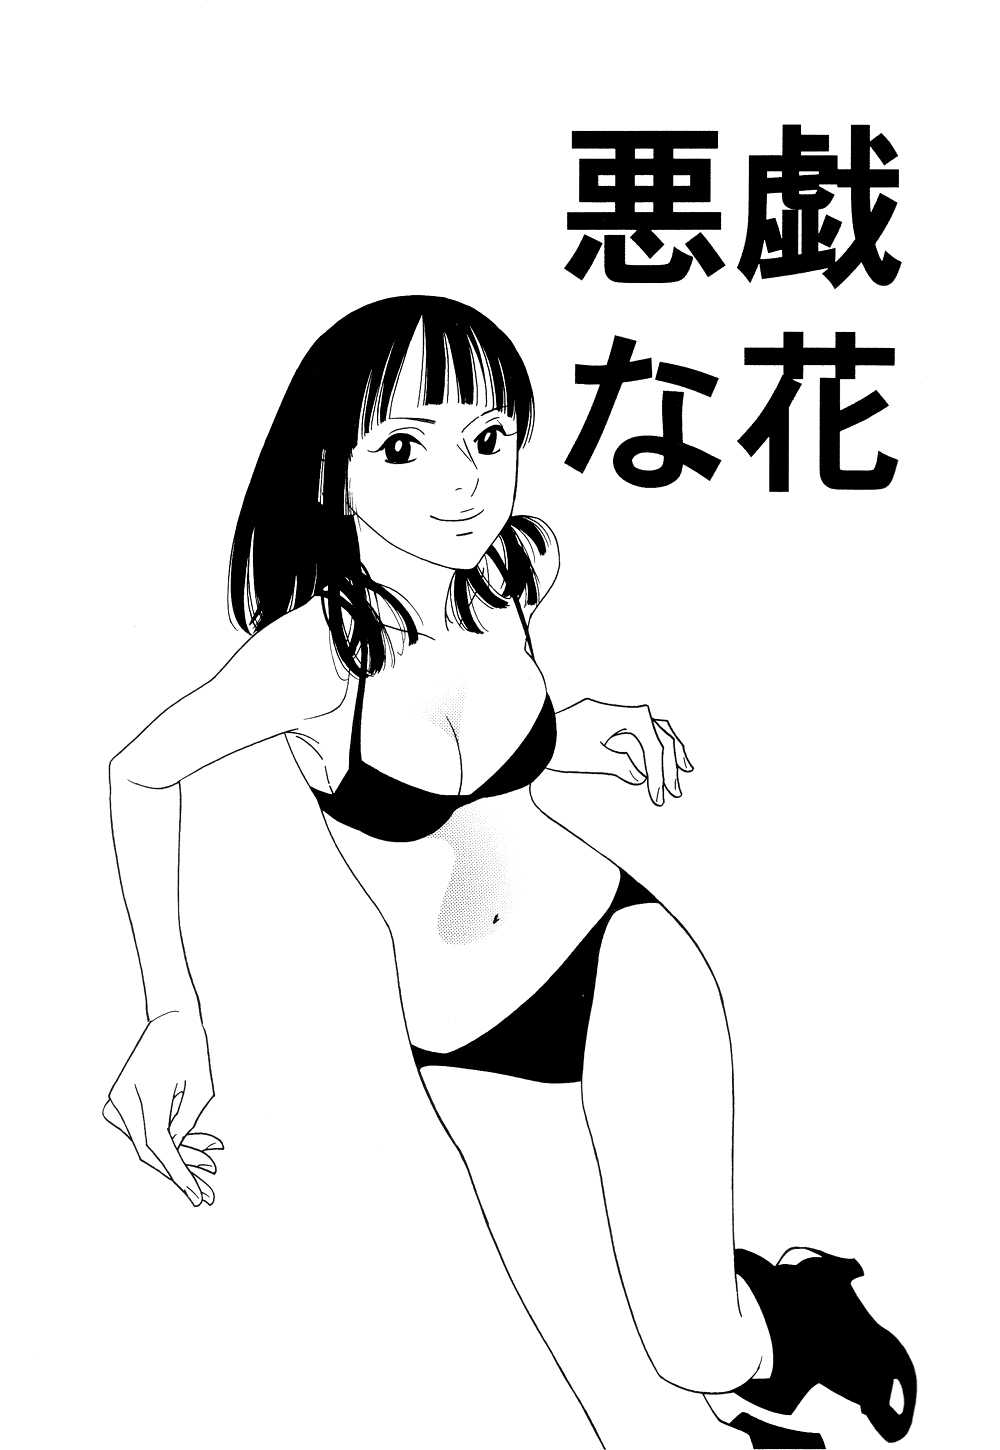 (C64) [CONAMI.CC (CONAMI)] Itazura na Hana (One Piece) (C64) [CONAMI.CC (CONAMI)] 海賊仁義 (ワンピース)